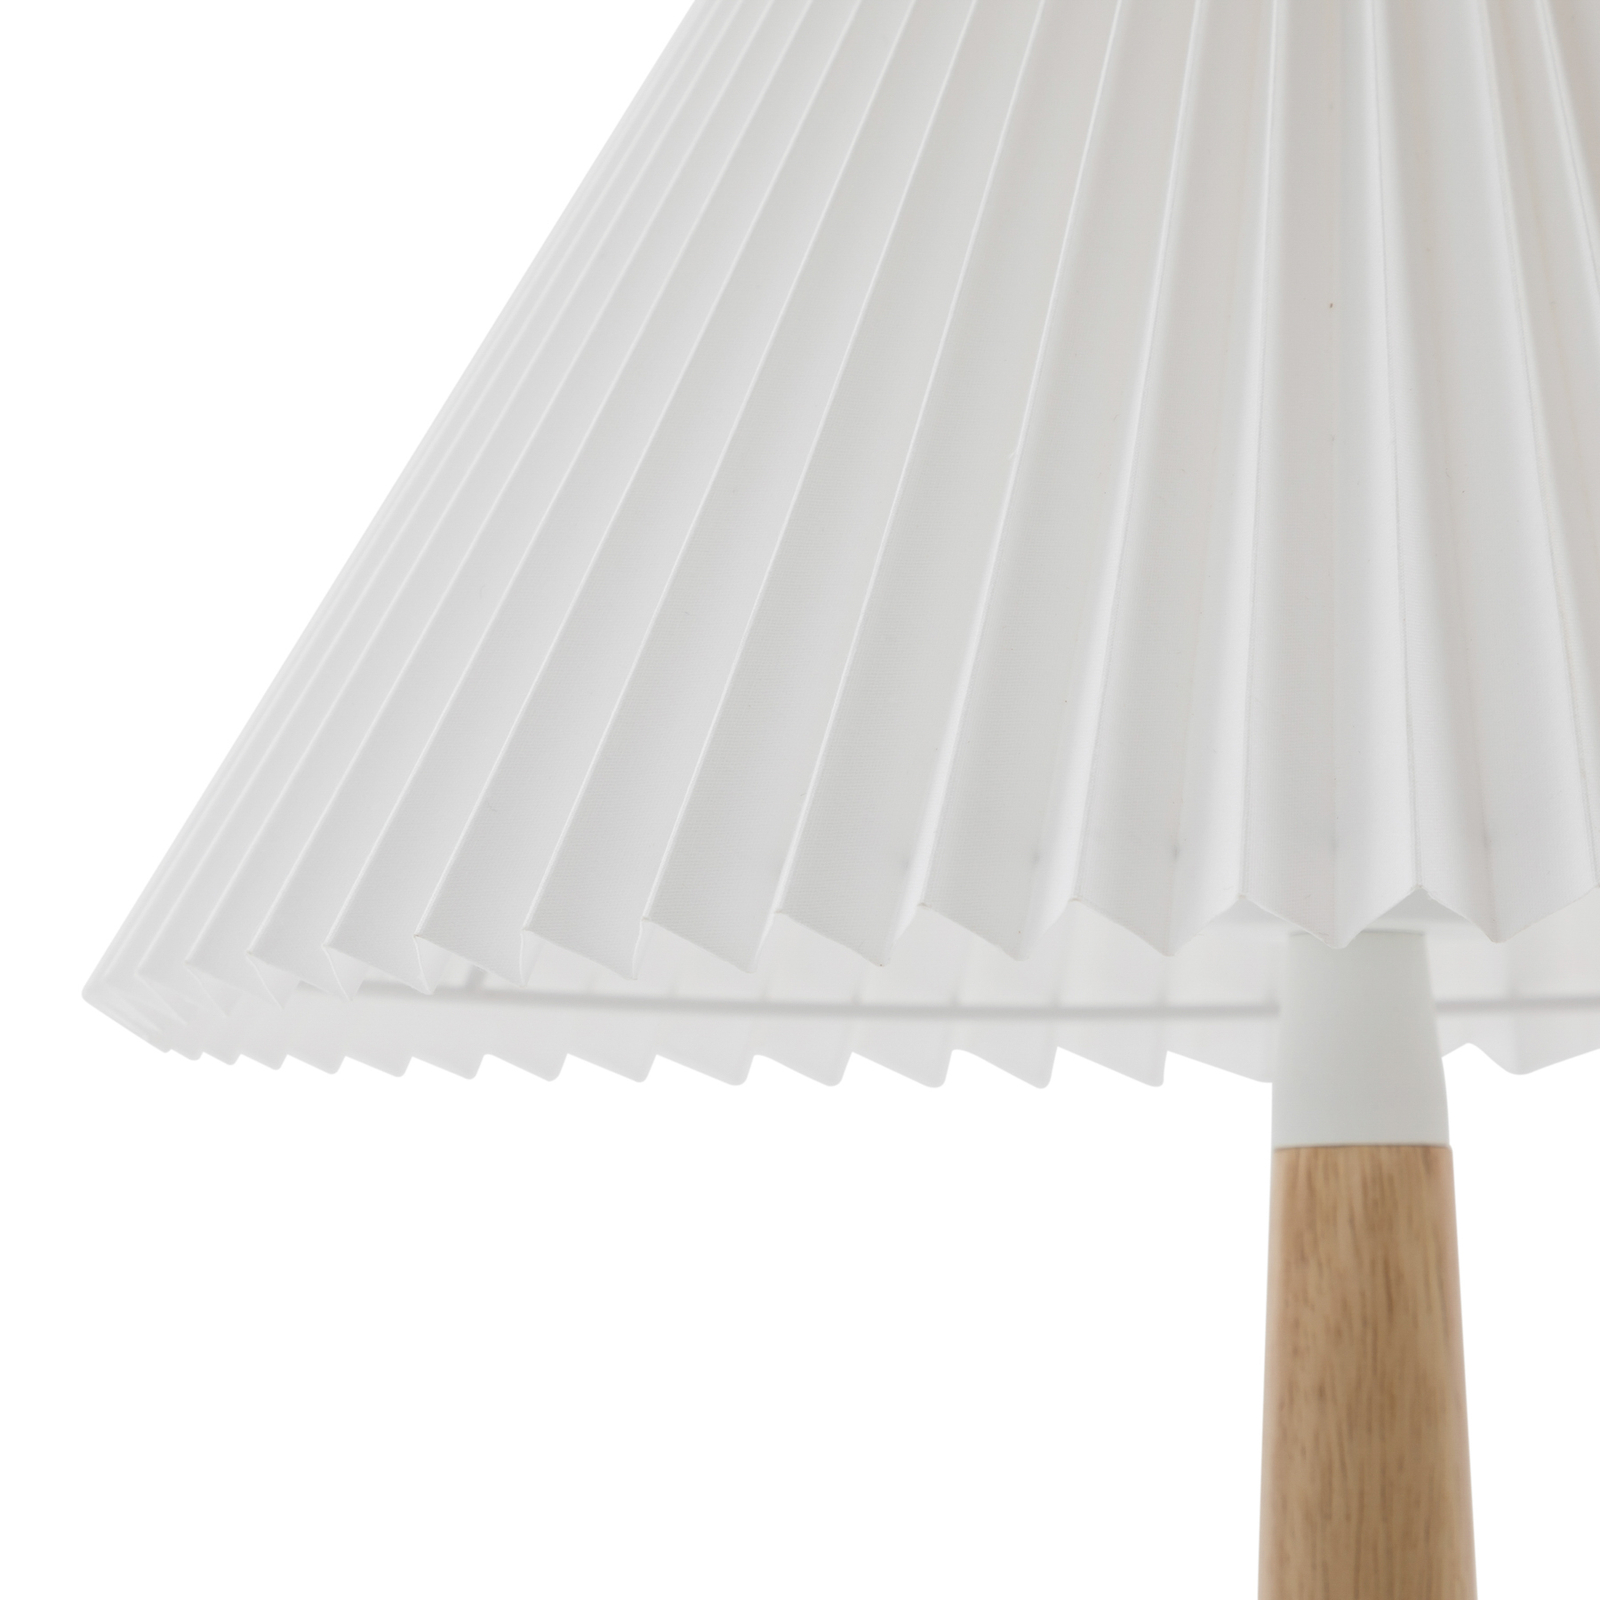 Lampă de masă Lucande Ellorin, alb, lemn, Ø 37 cm, E27